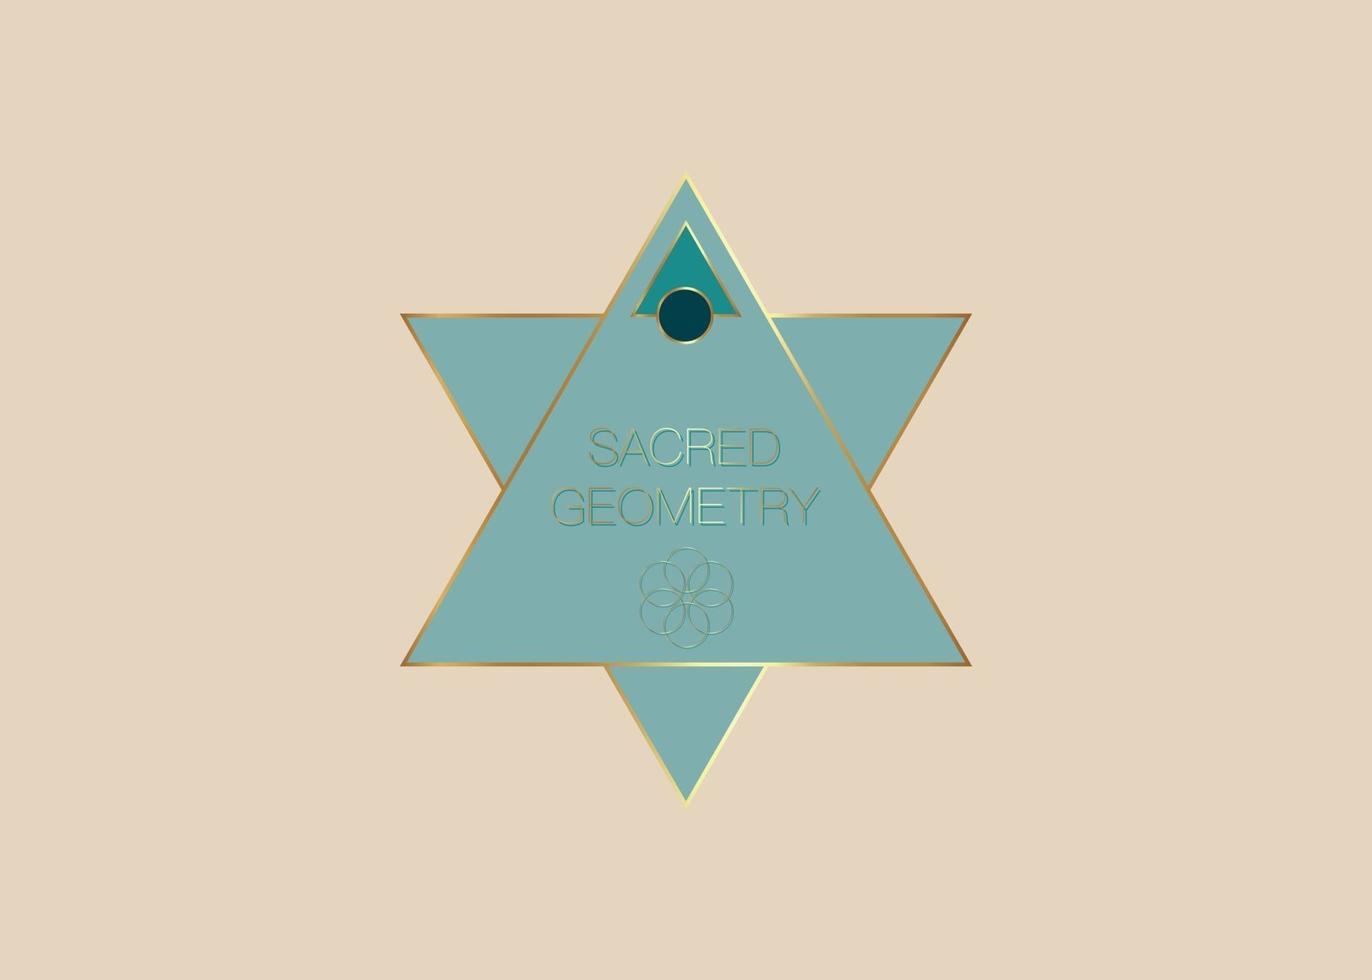 geometría sagrada, triángulos geométricos en forma de plantilla de logotipo vector